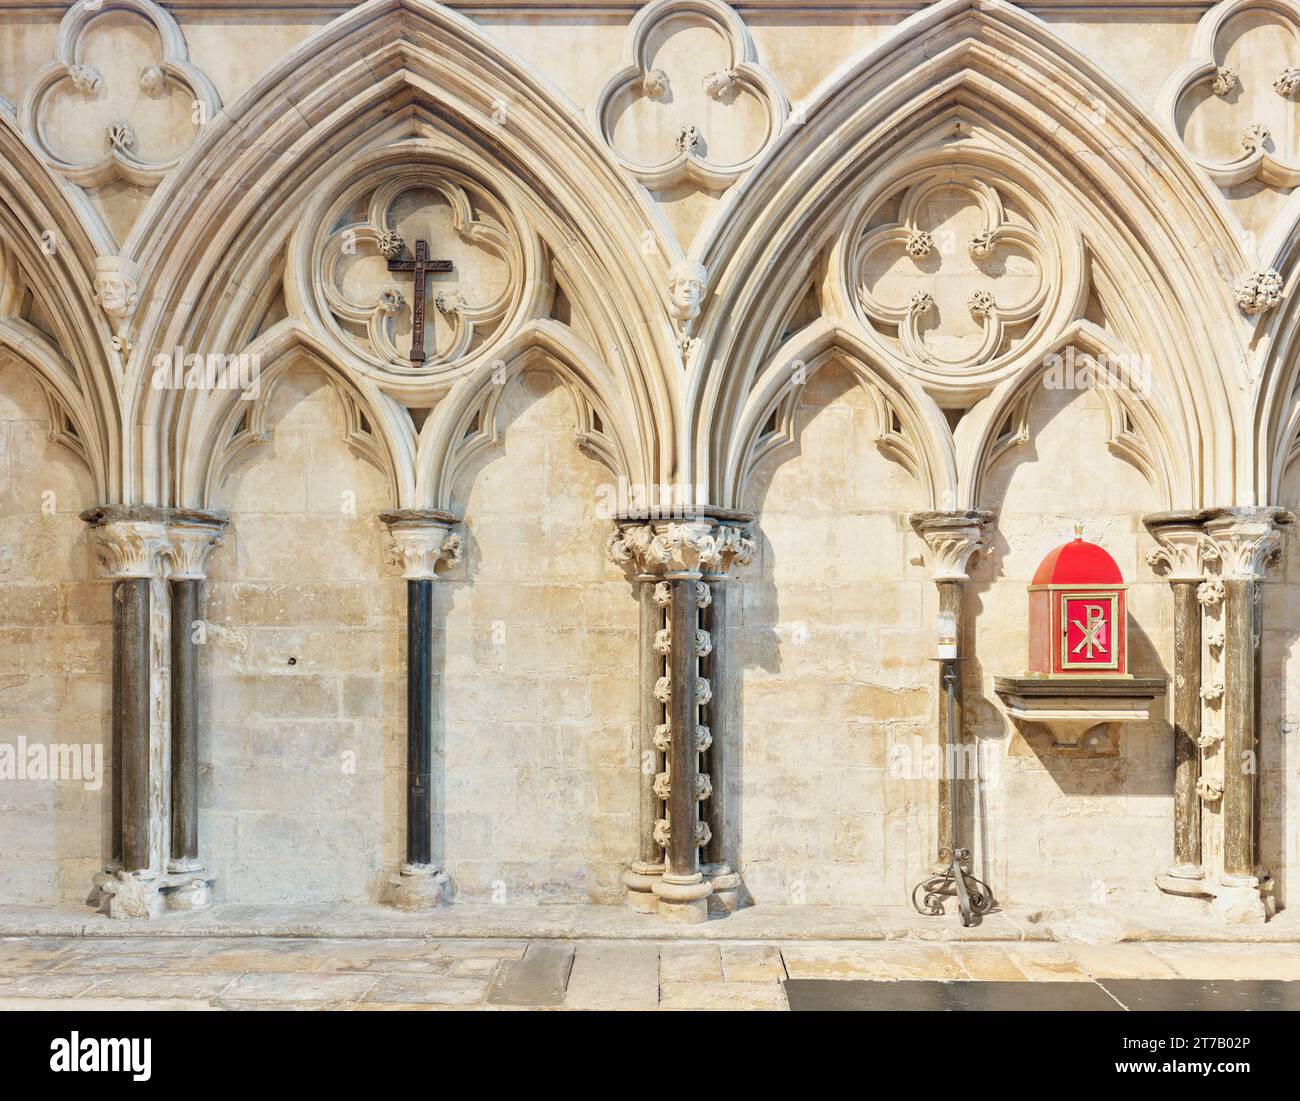 Archi decorativi sulla parete della cappella dell'estremità orientale nella cattedrale cristiana medievale di Lincoln, in Inghilterra. Foto Stock